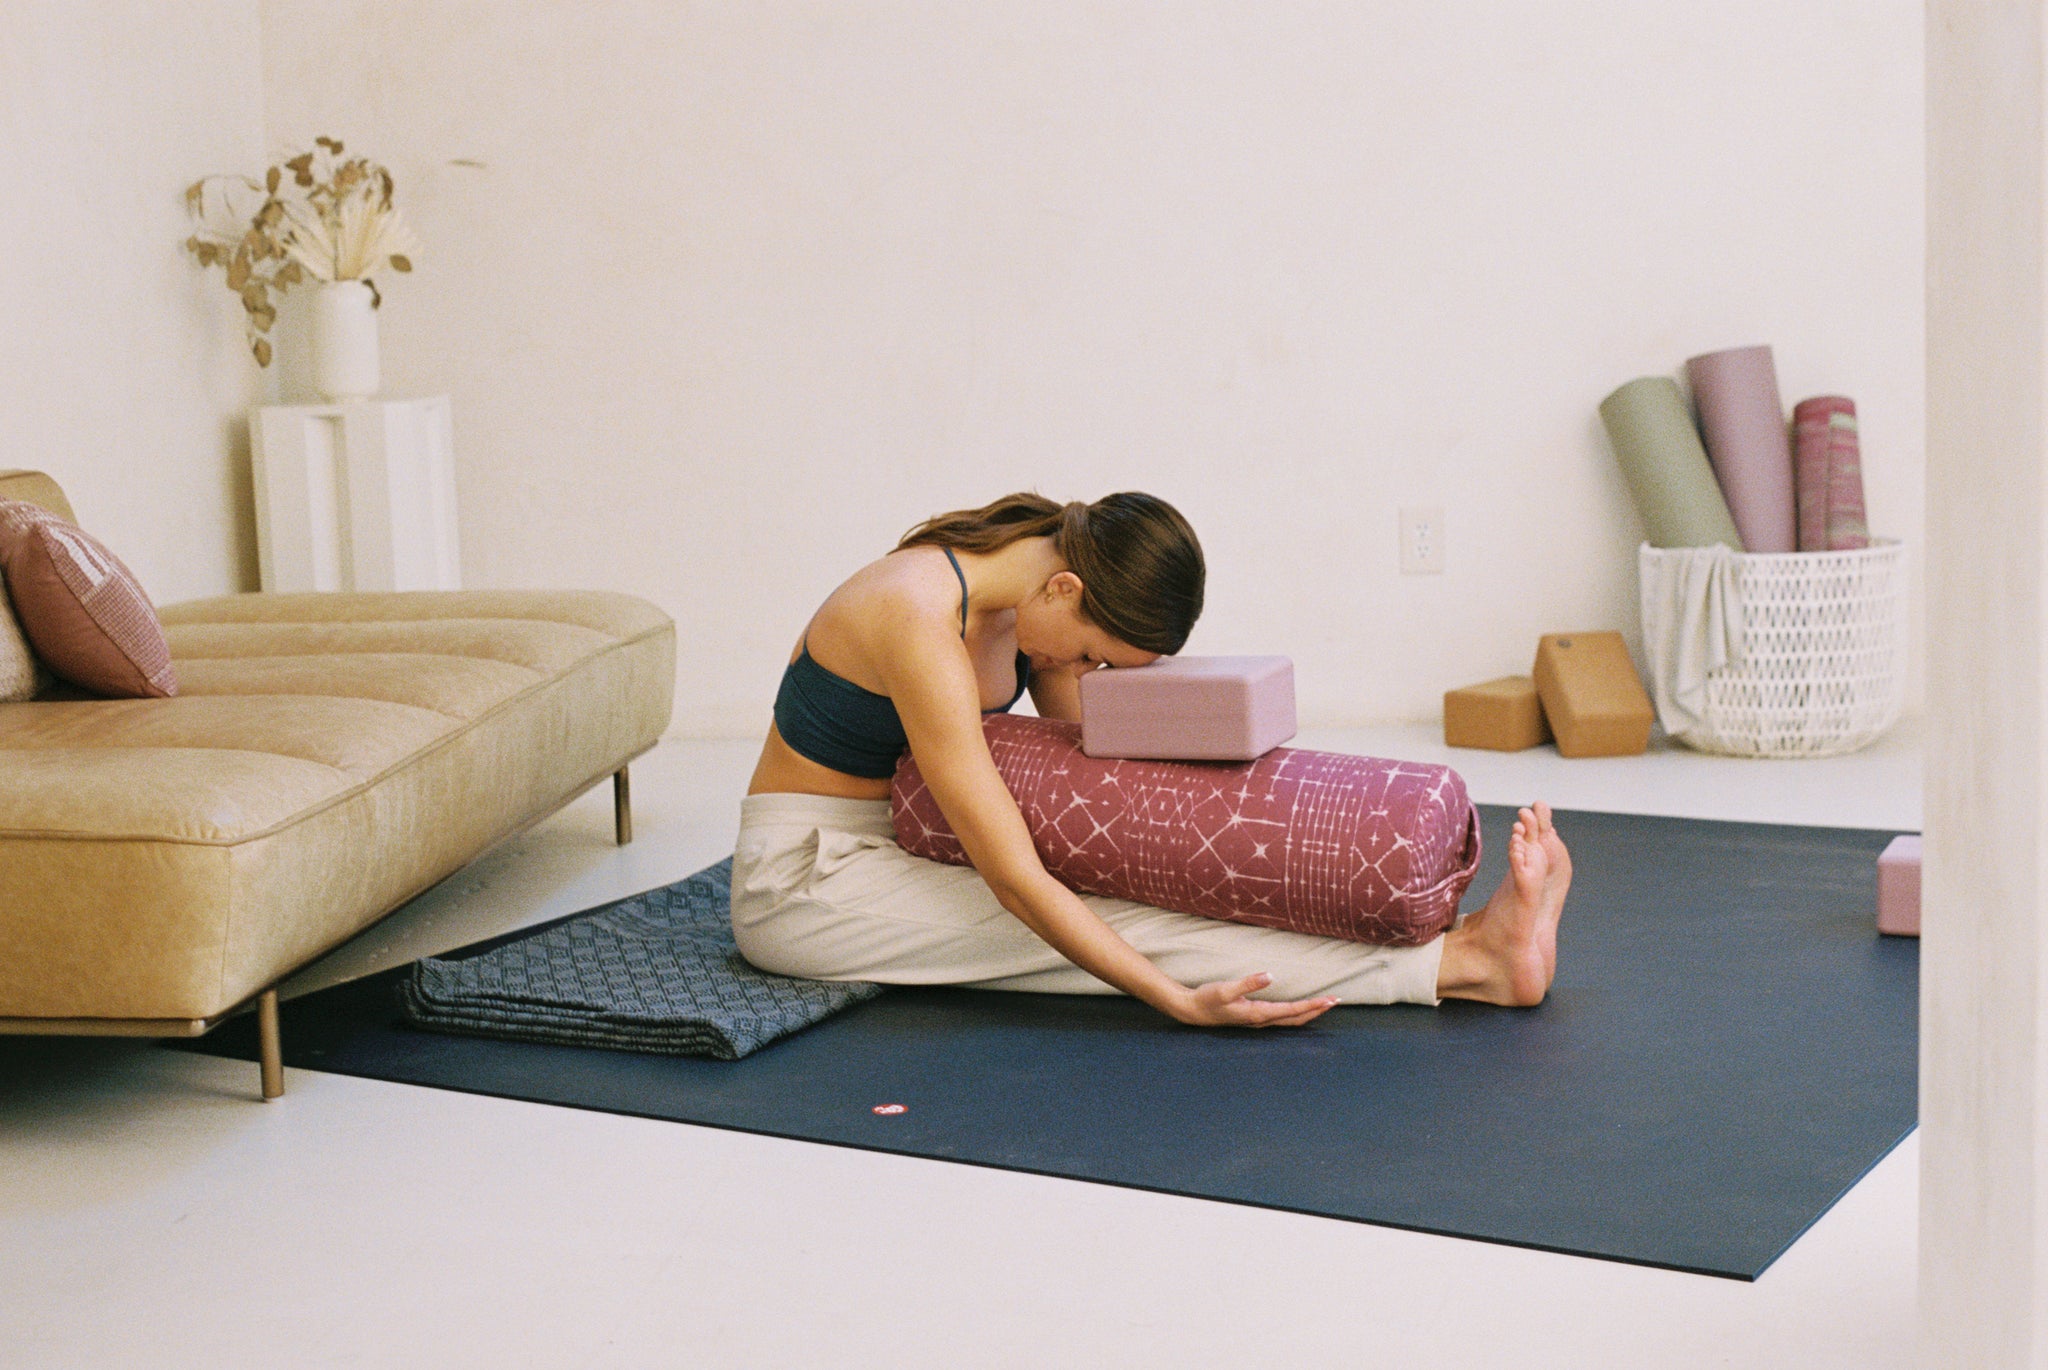 Rectangular, inclinada o redonda: ¿qué almohadilla de yoga te